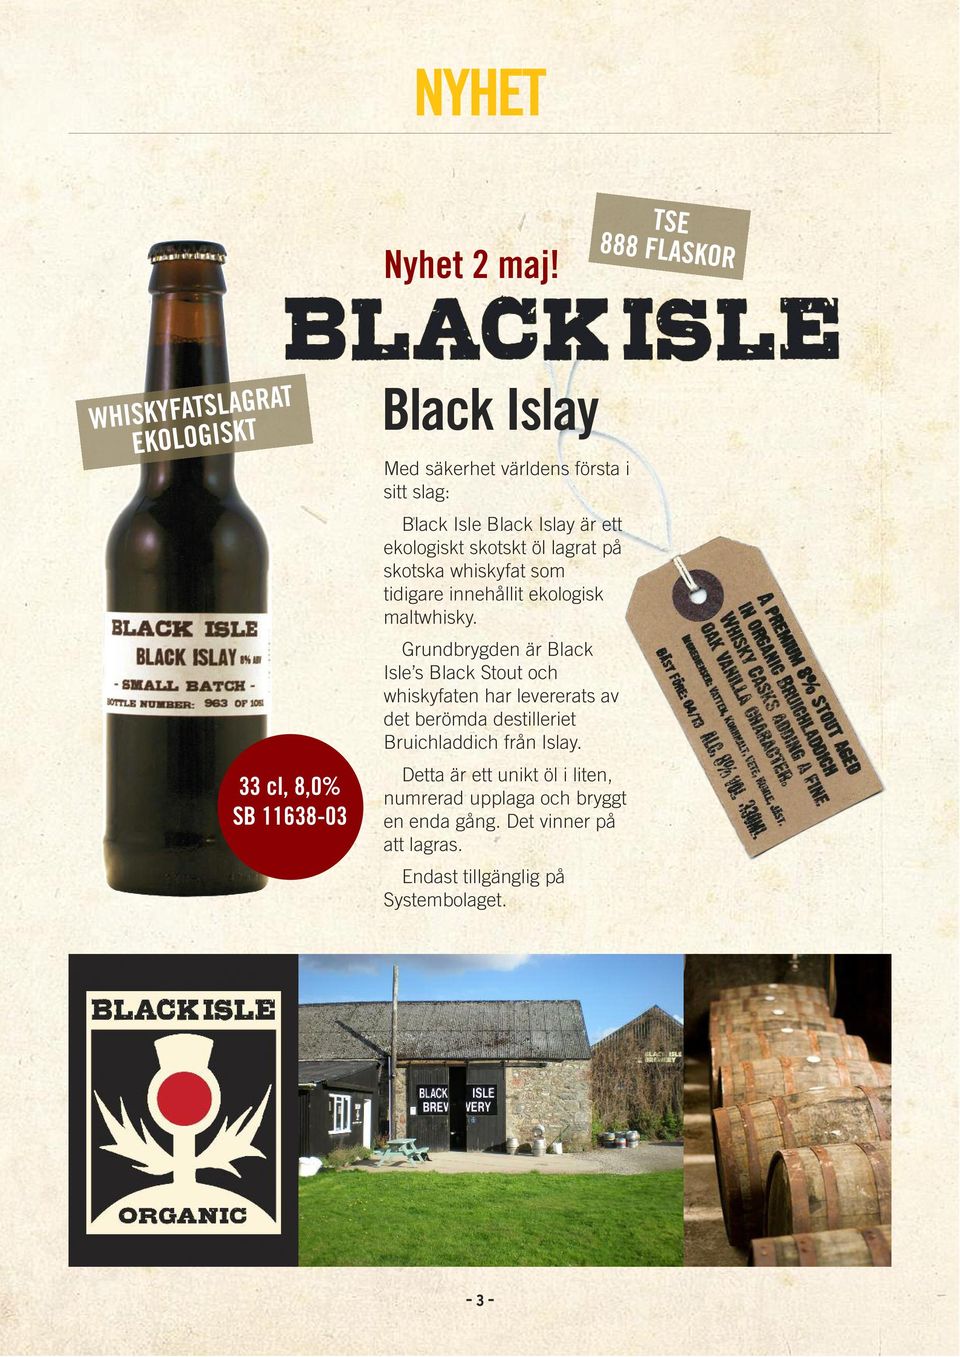 Black Islay är ett ekologiskt skotskt öl lagrat på skotska whiskyfat som tidigare inne hållit ekologisk maltwhisky.